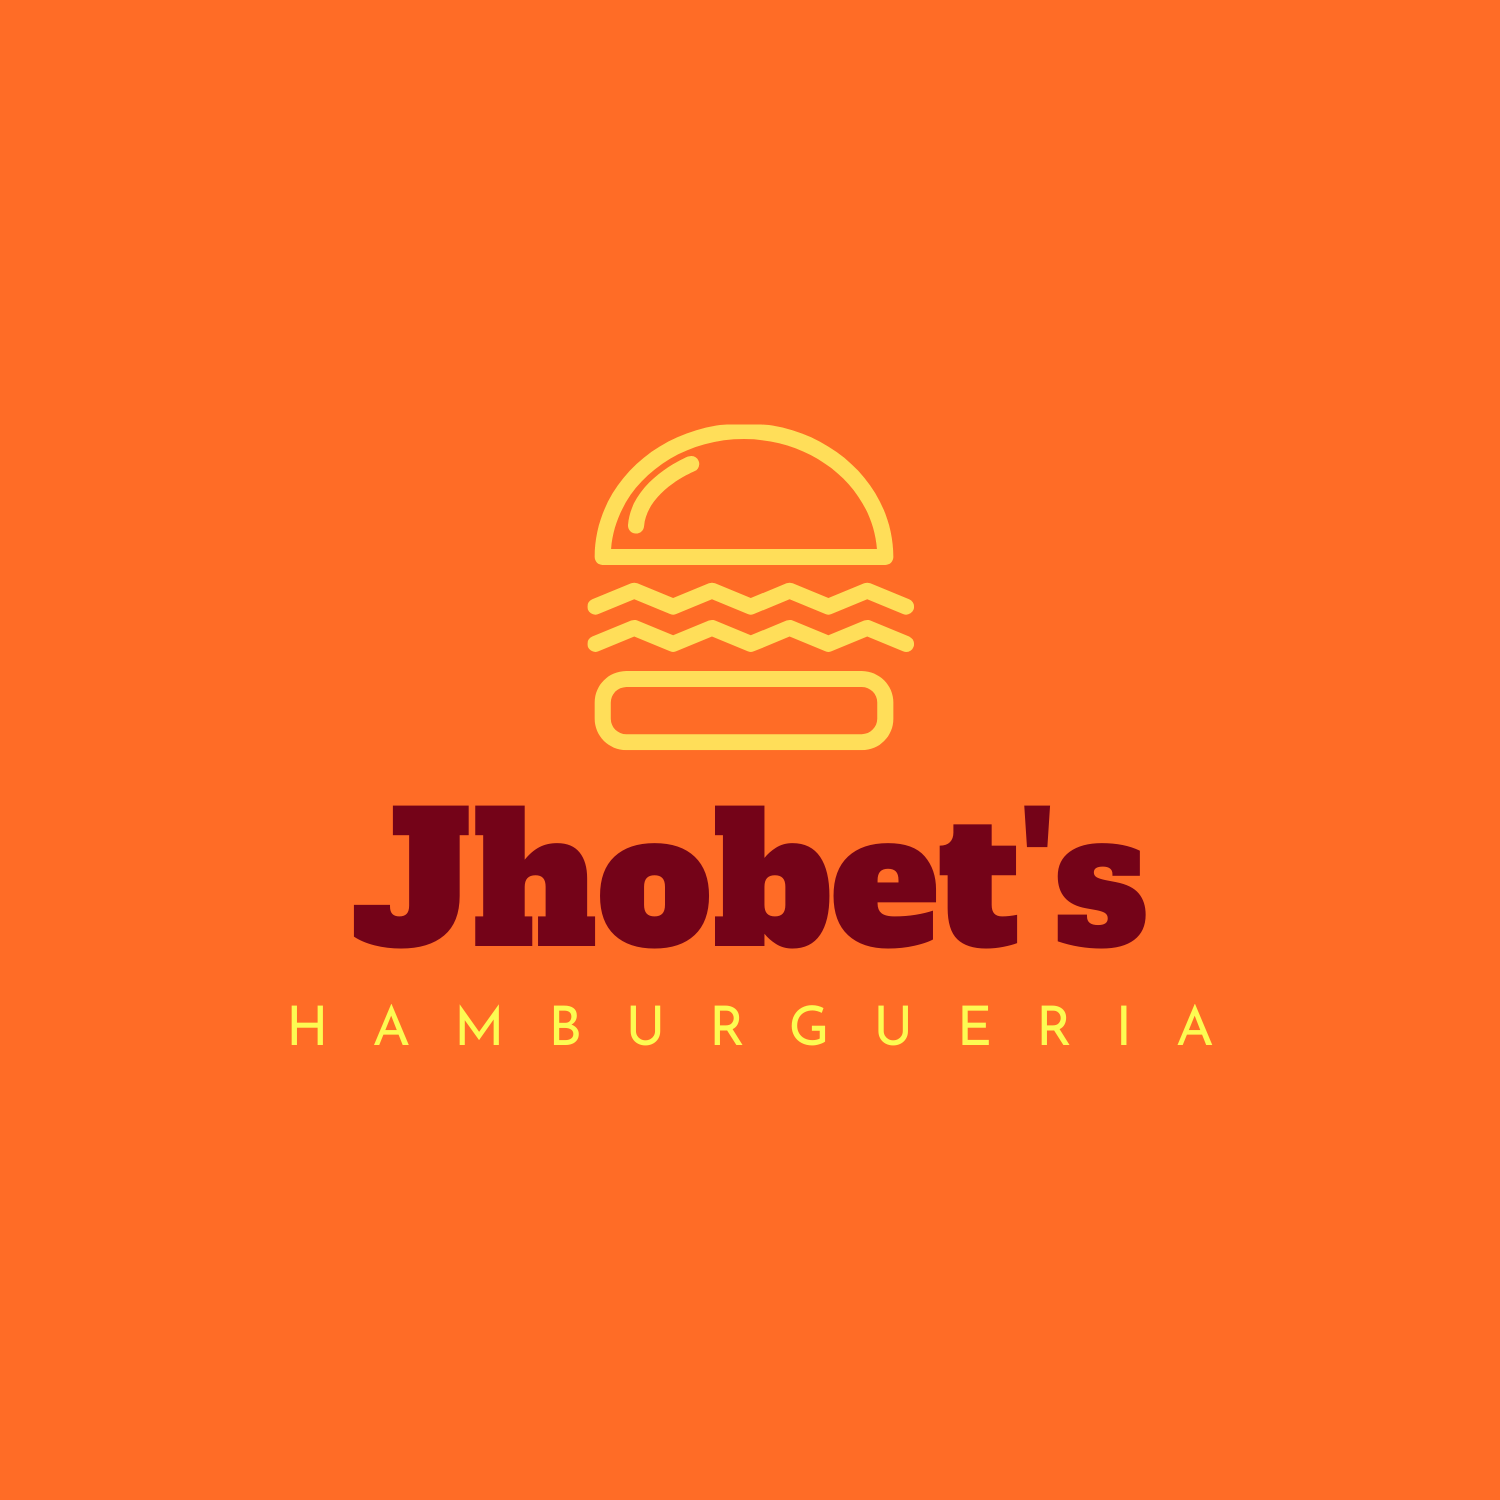 Logo-Hamburgueria - Jhobets 